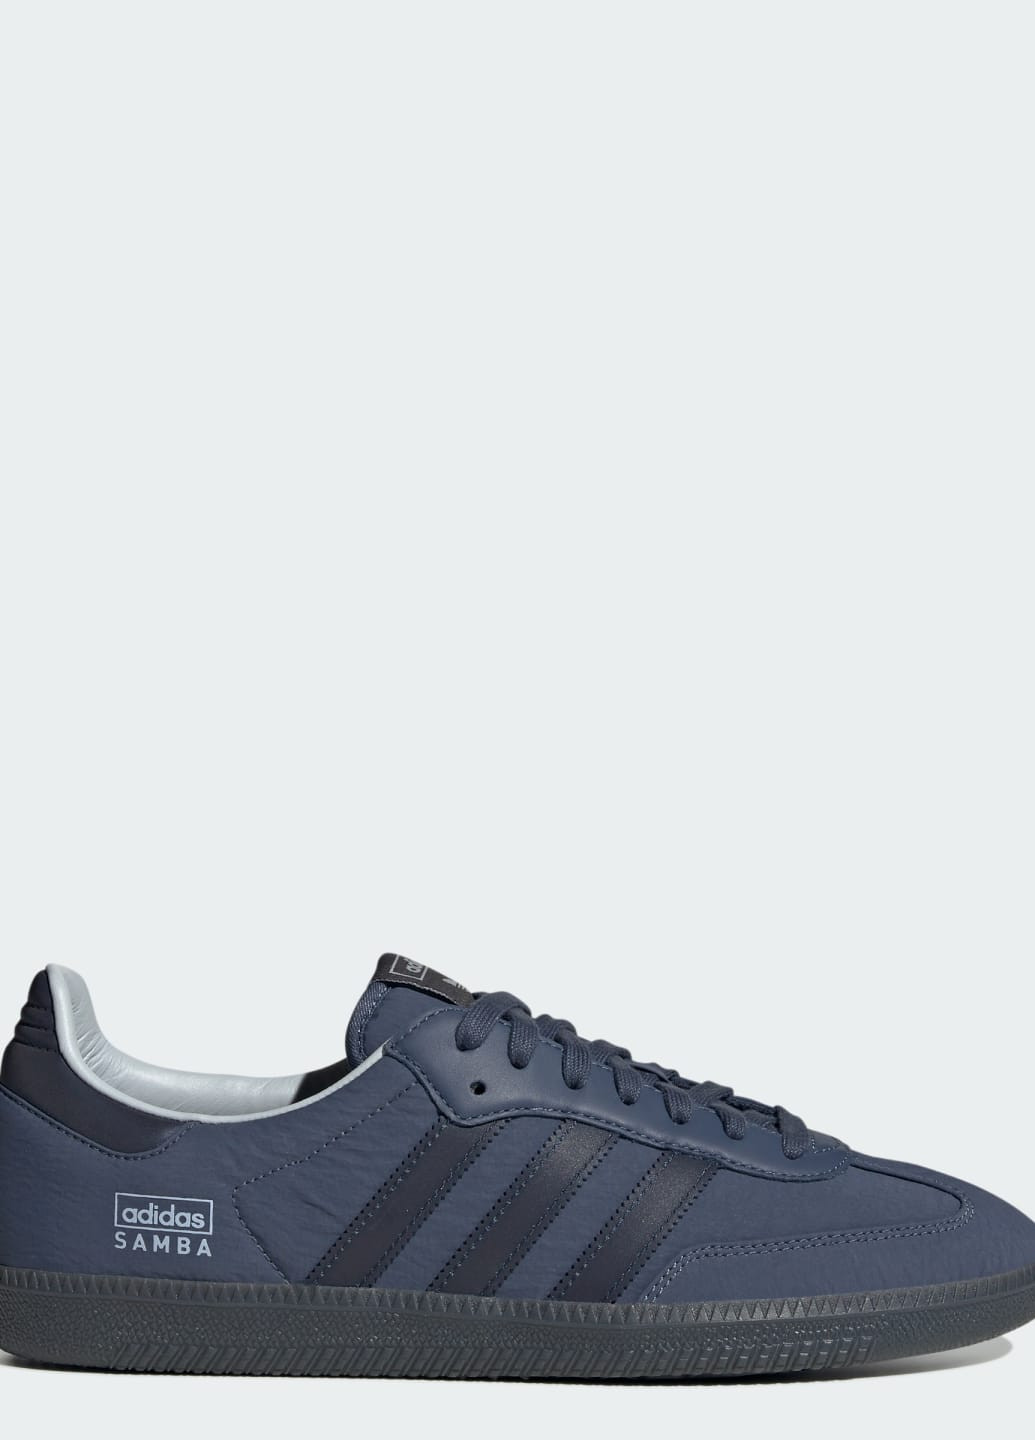 Синие всесезонные кроссовки samba og adidas